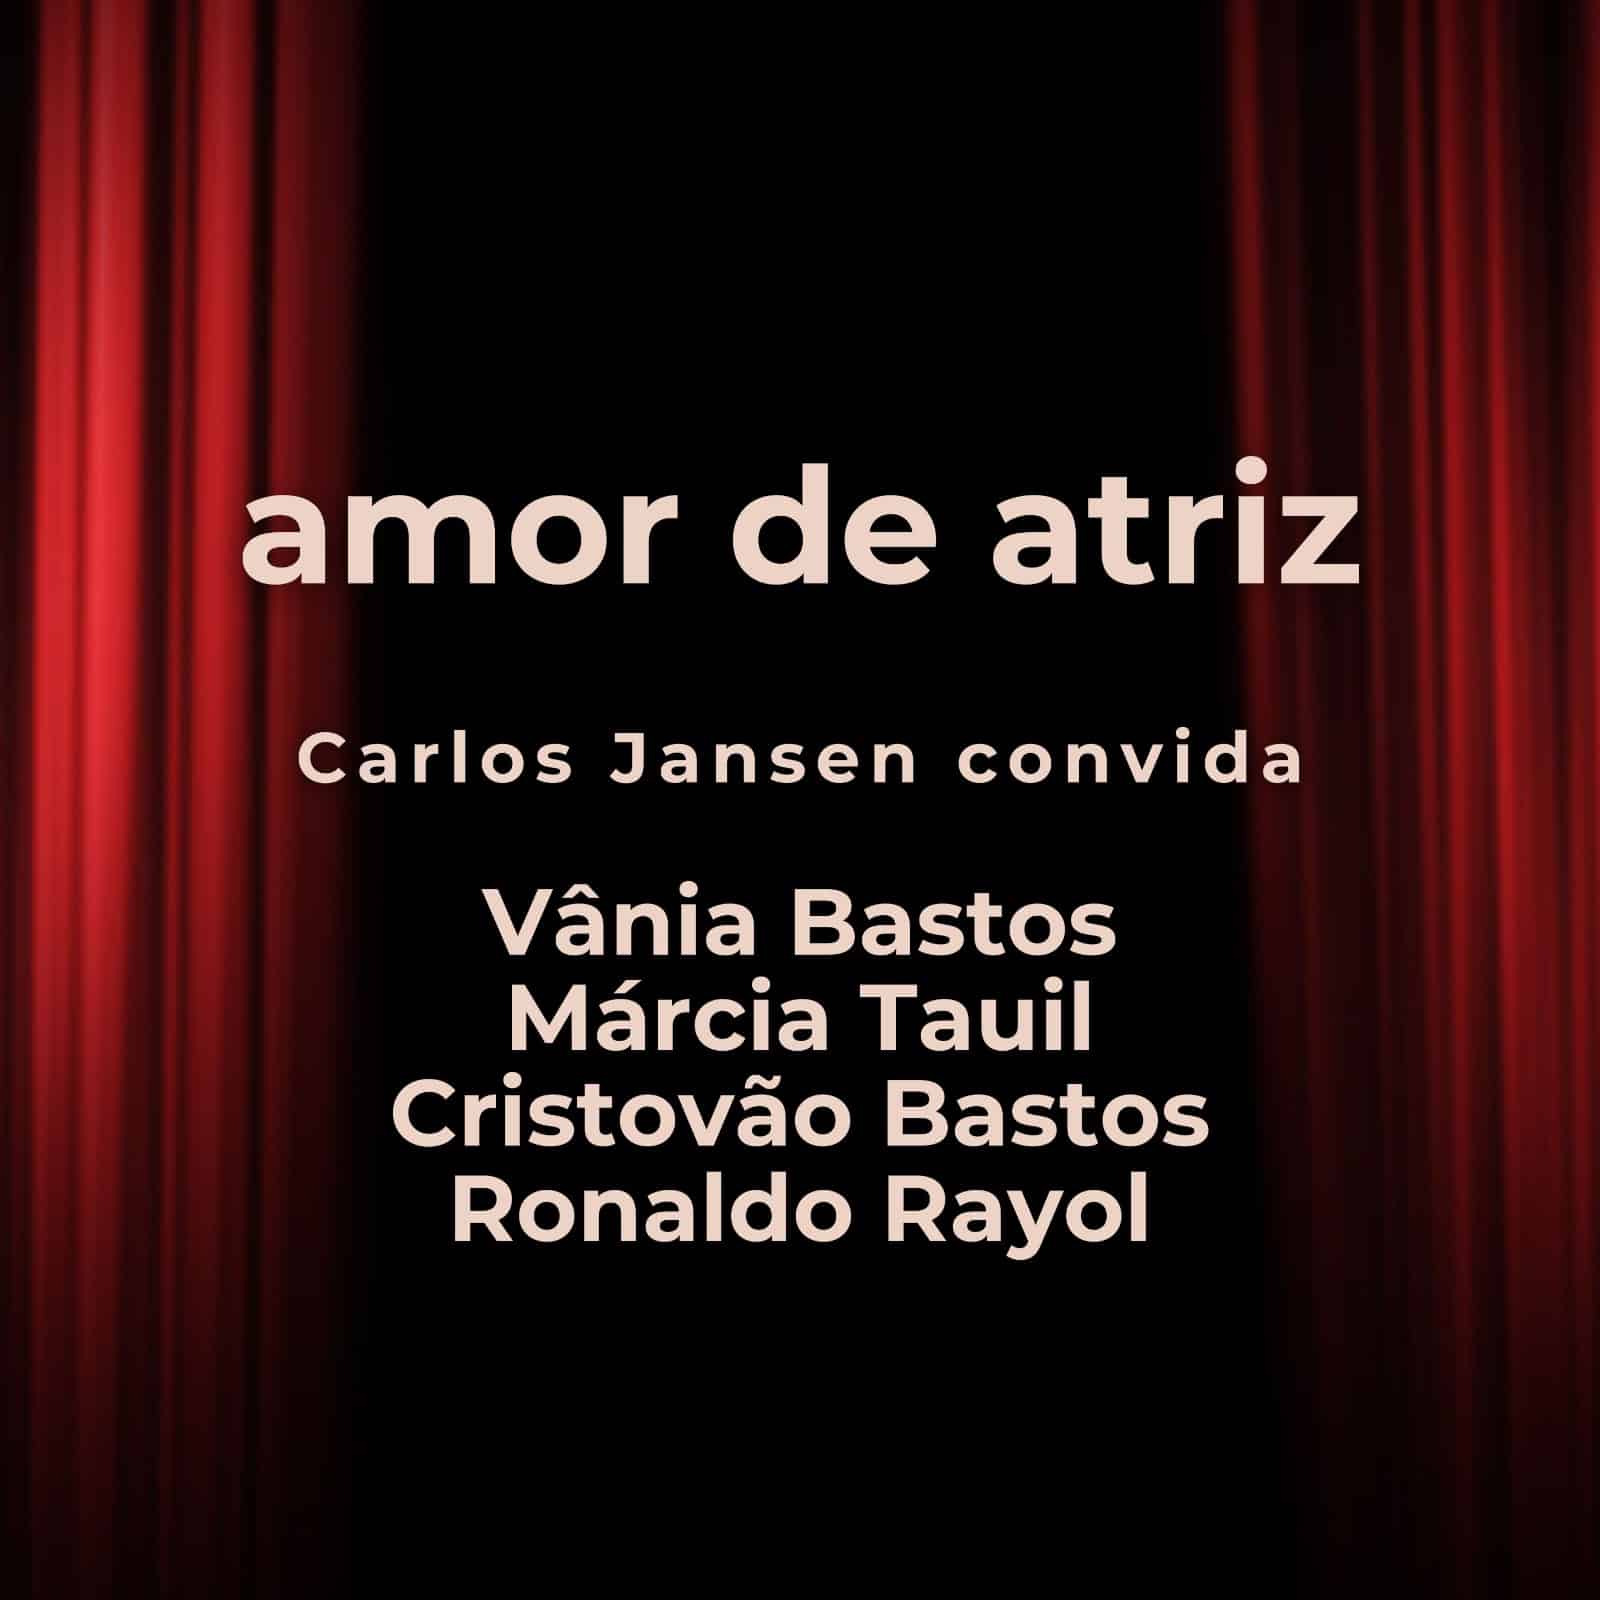 revistaprosaversoearte.com - Lançamento: single 'Amor de Atriz', canção de Cristovão Bastos e Carlos Jansen